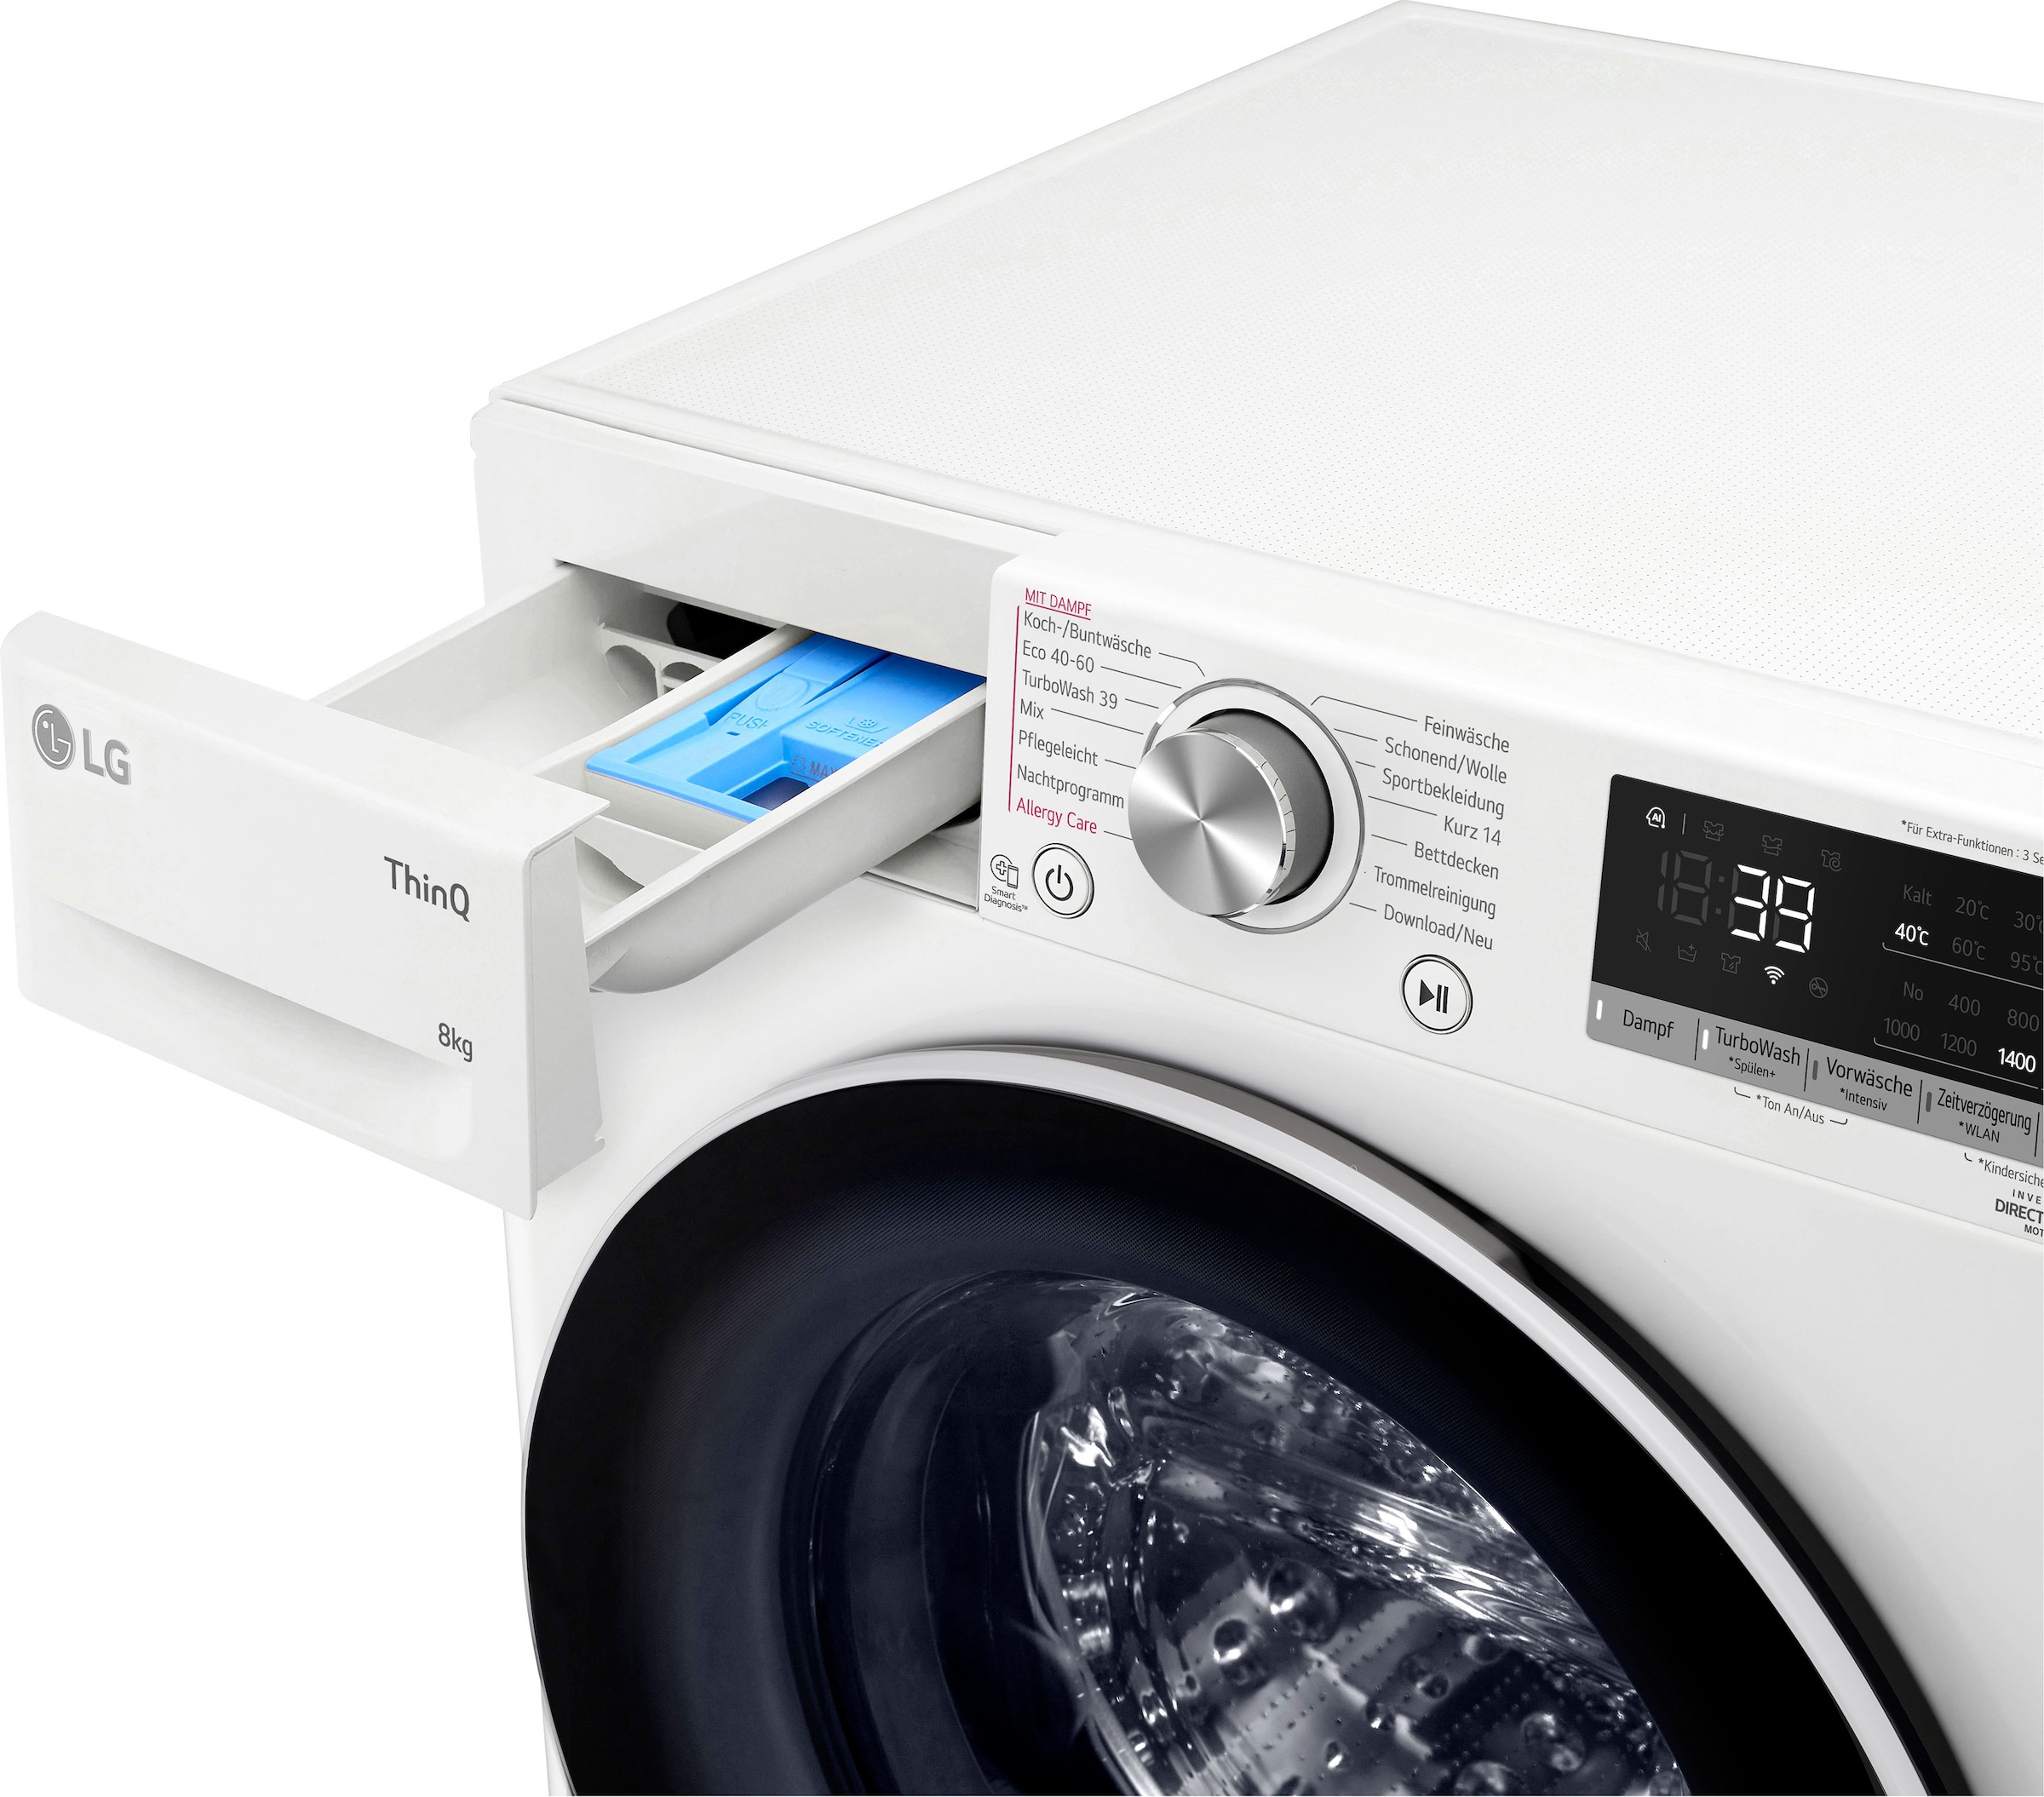 LG Waschmaschine »F4WV5080«, 8 U/min, XXL mit 3 Steam-Funktion, kg, 1400 4 Jahren Garantie Garantie inklusive F4WV5080, Jahre